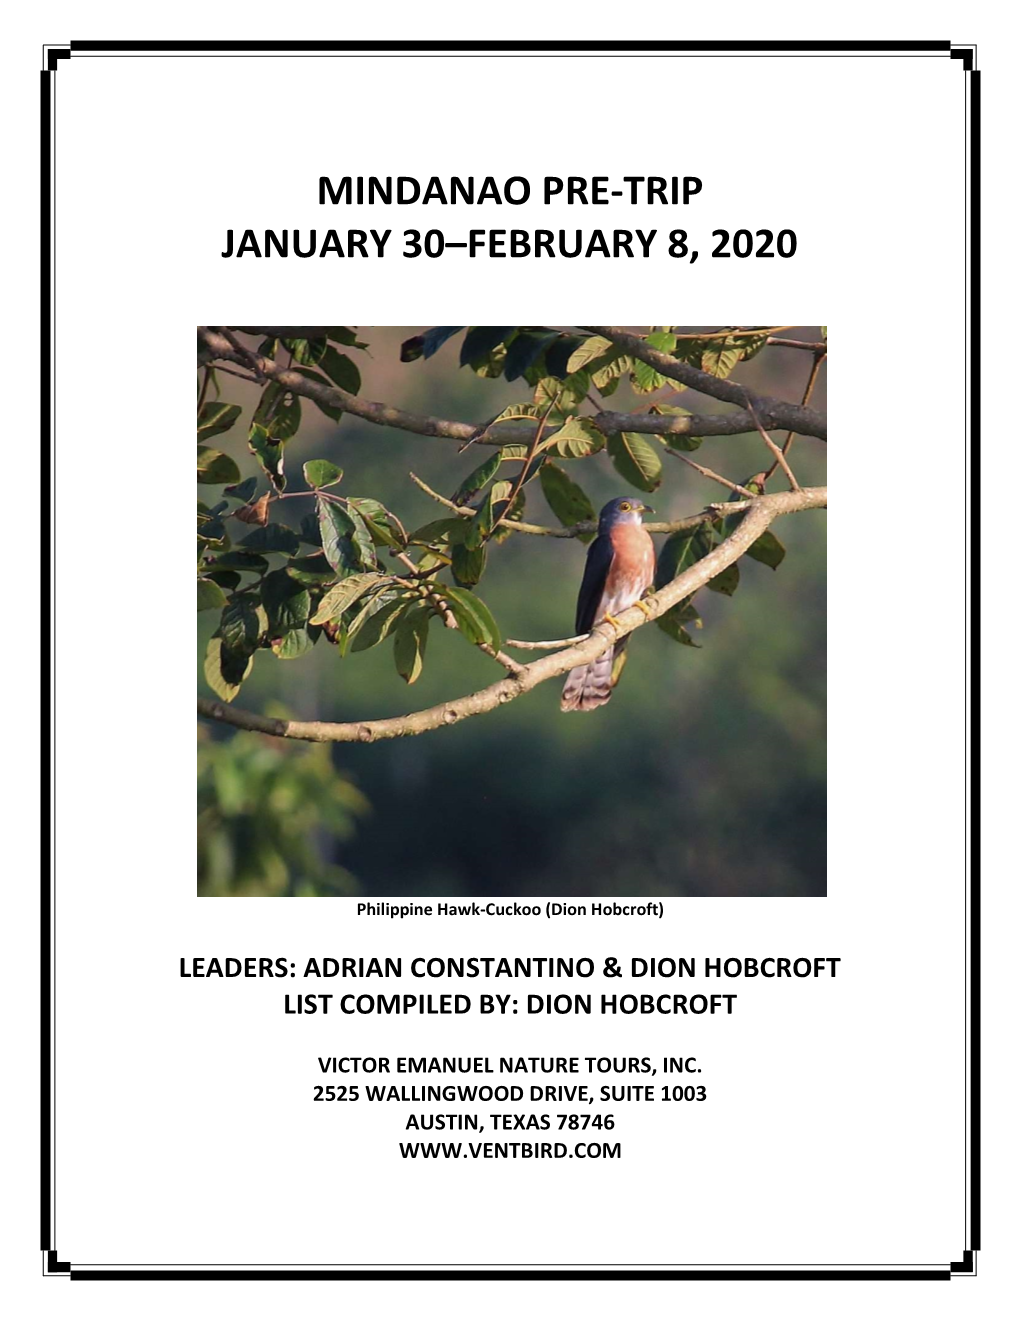 Mindanao Pre-Trip January 30–February 8, 2020